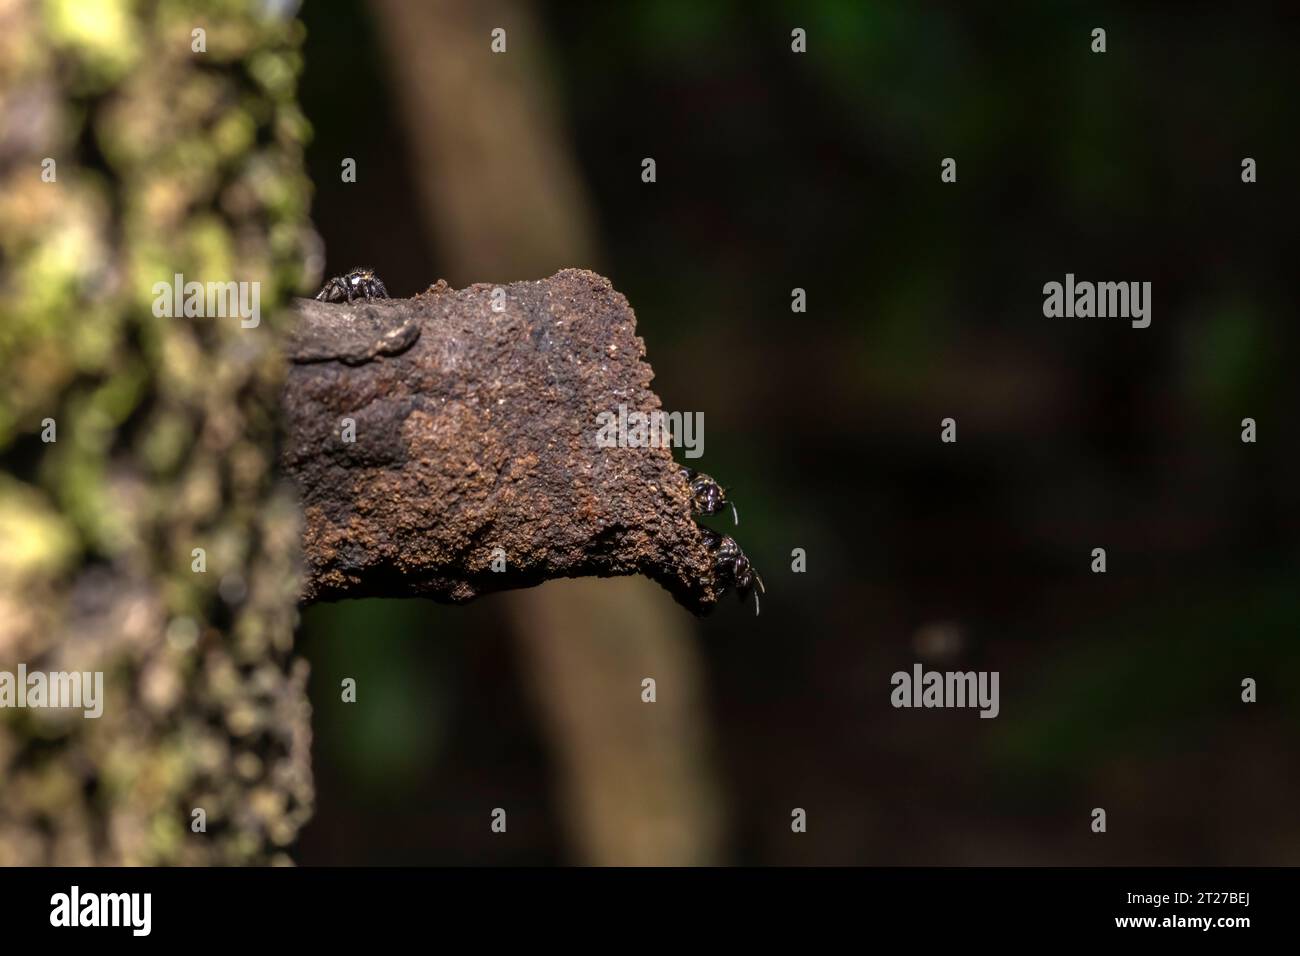 Ape brasiliana senza puntura nota come Tucuna (Scaptotrigona bipunctata) all'ingresso del suo nido o alveare, realizzata nel tronco di un albero in Brasile Foto Stock